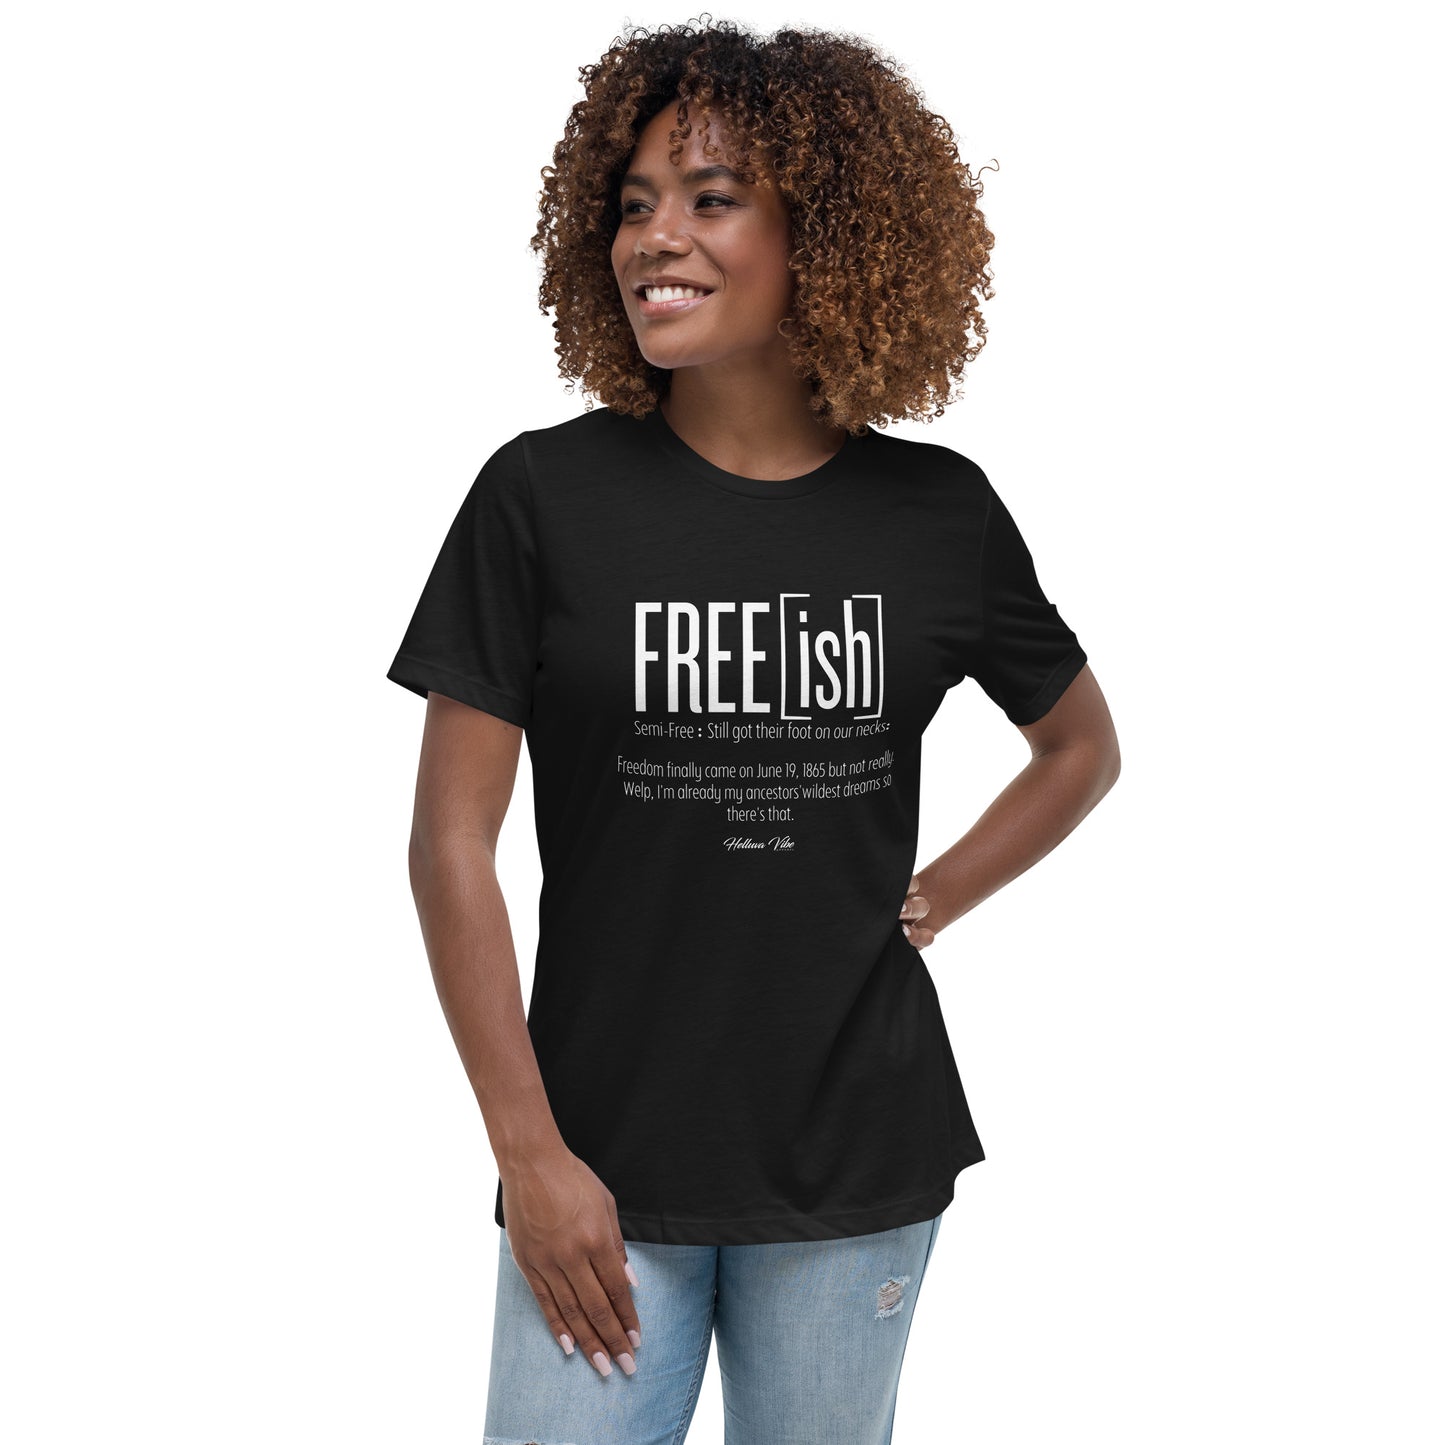 Freeish Graphic Tshirt